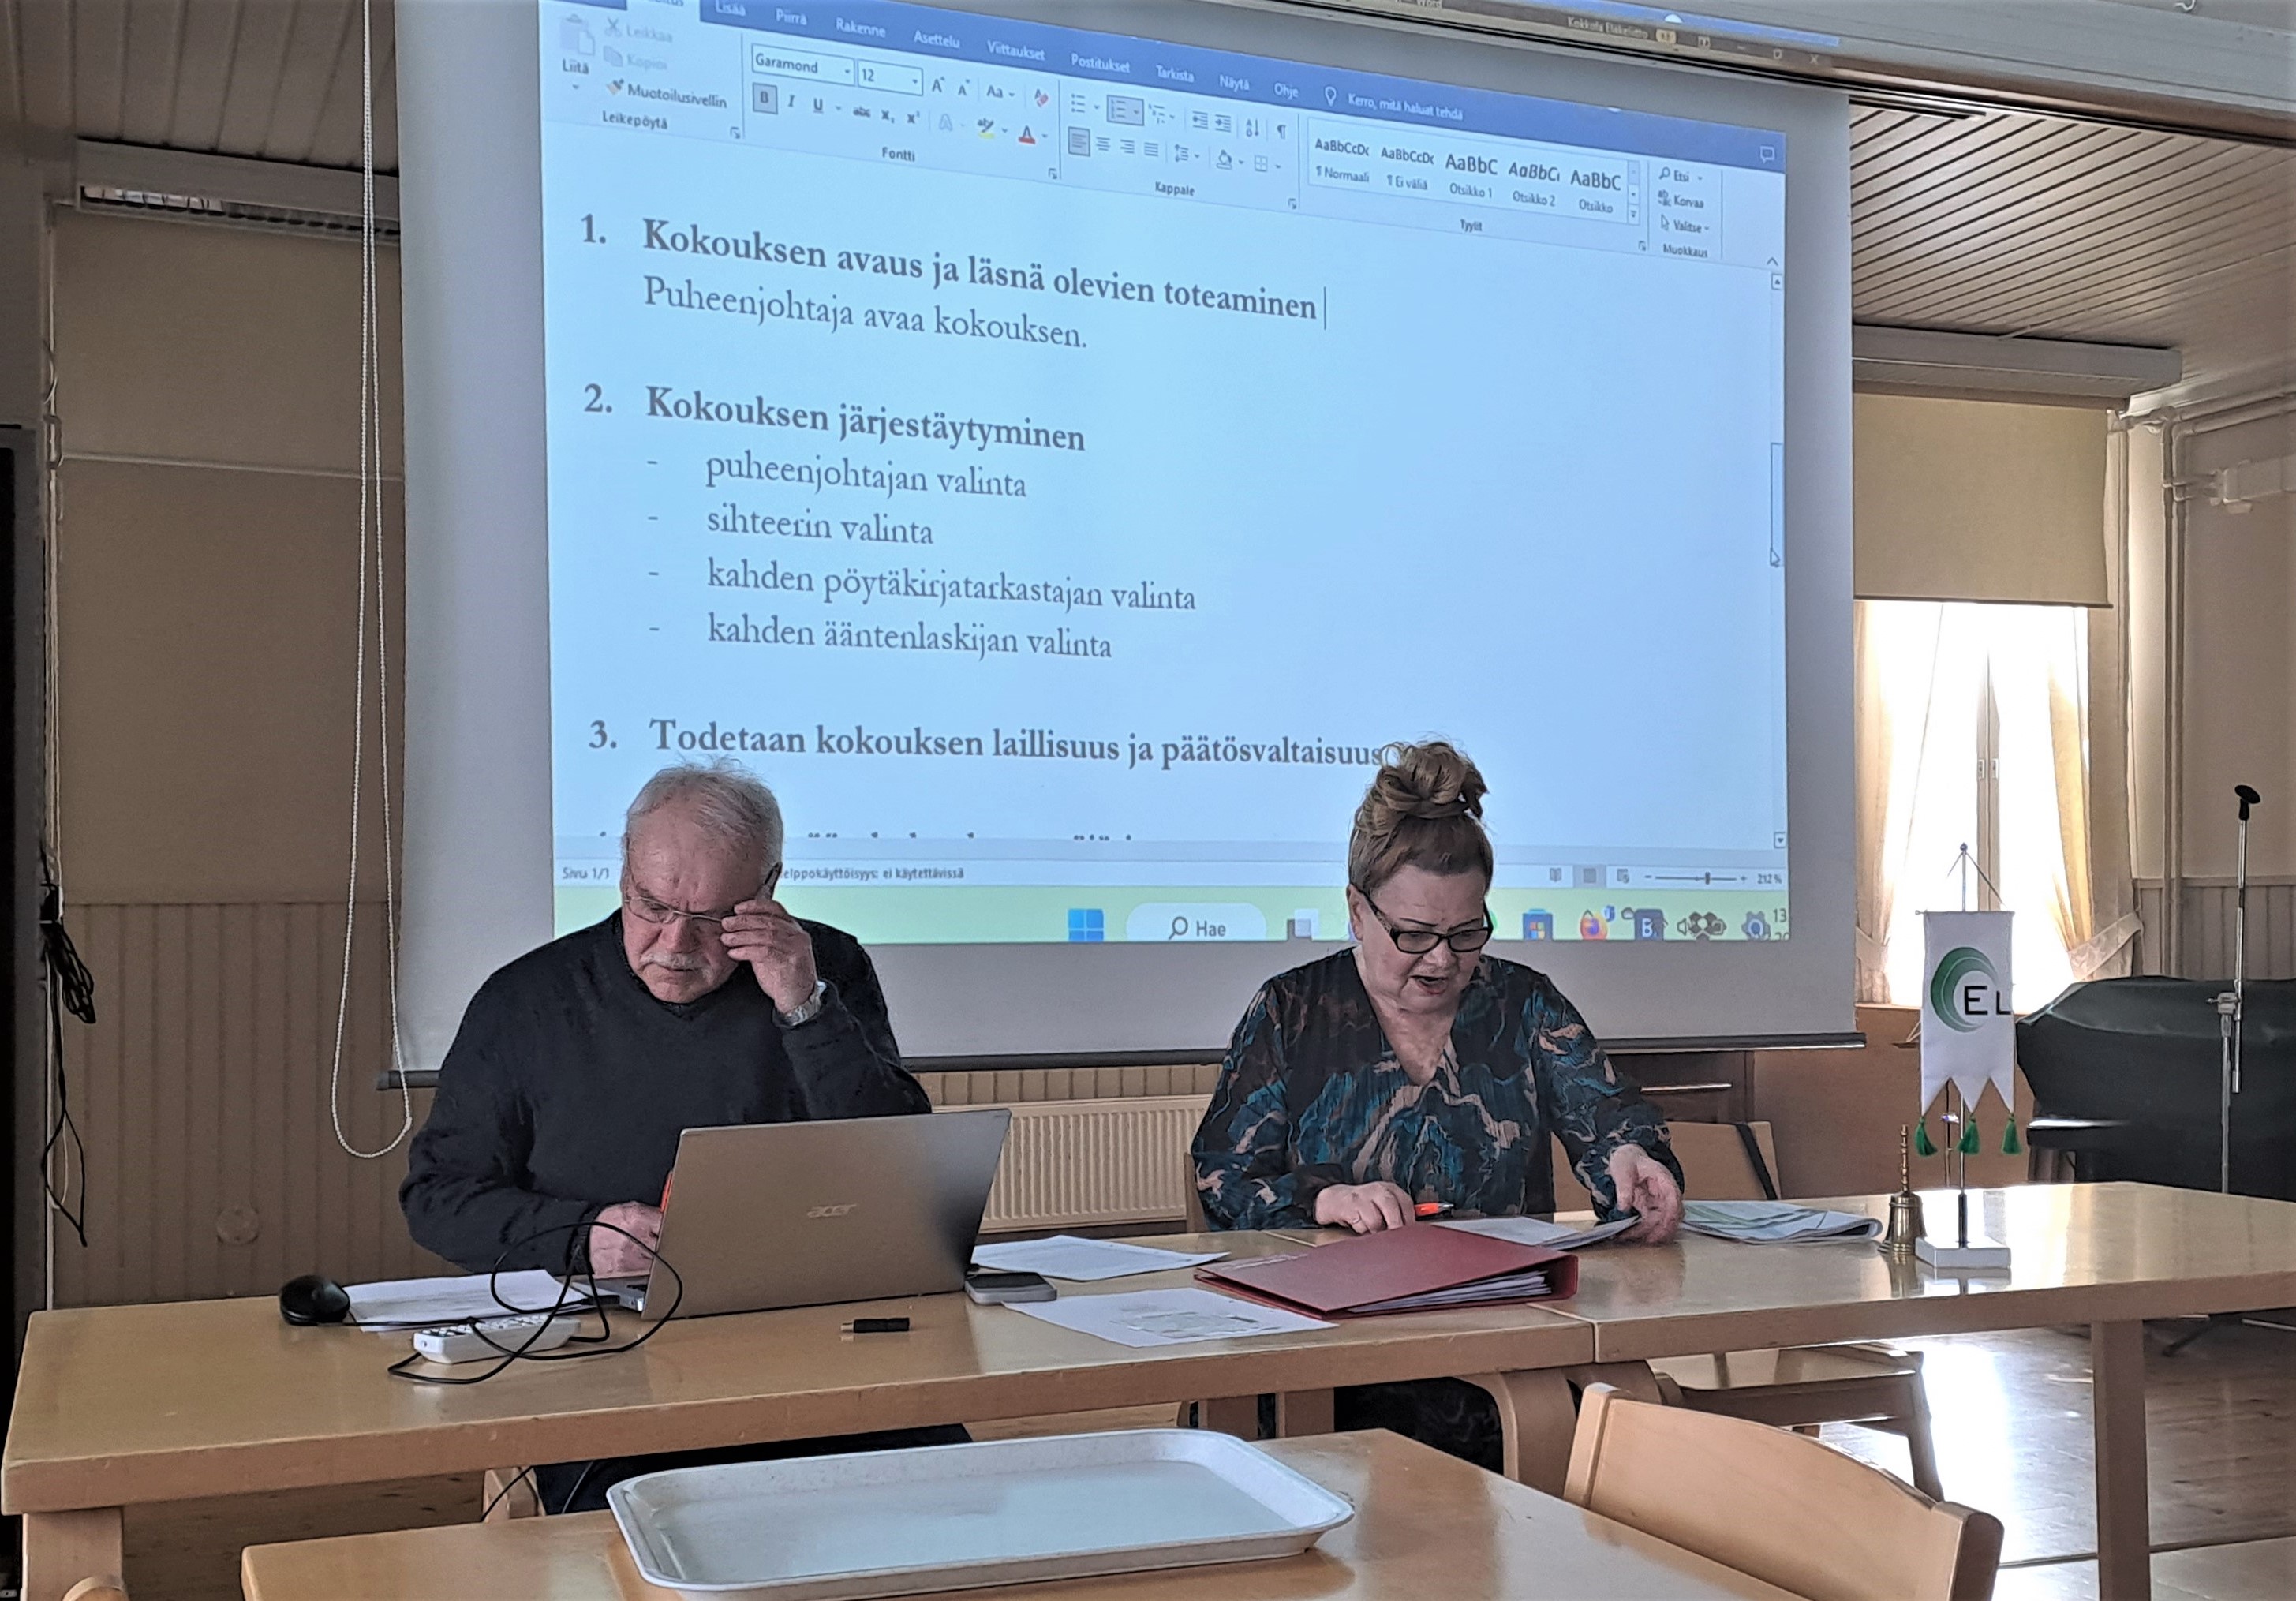 Kokous järjestäytyy: sihteerinä Seppo Lamminen ja puheenjohtajana Taina Alanko